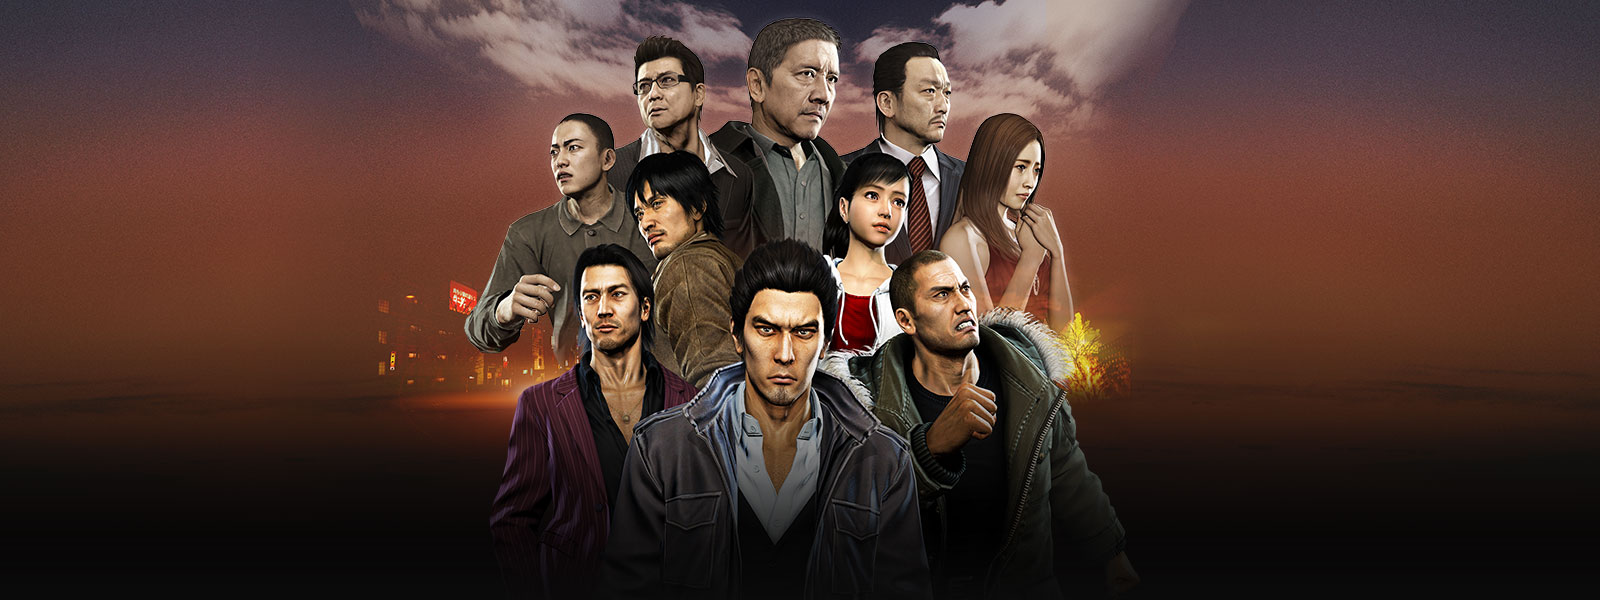 Kazuma Kiryu steht vor einer Collage aus Charakteren des Tojo-Clans und der Omi-Allianz über einer nebligen Stadtszene